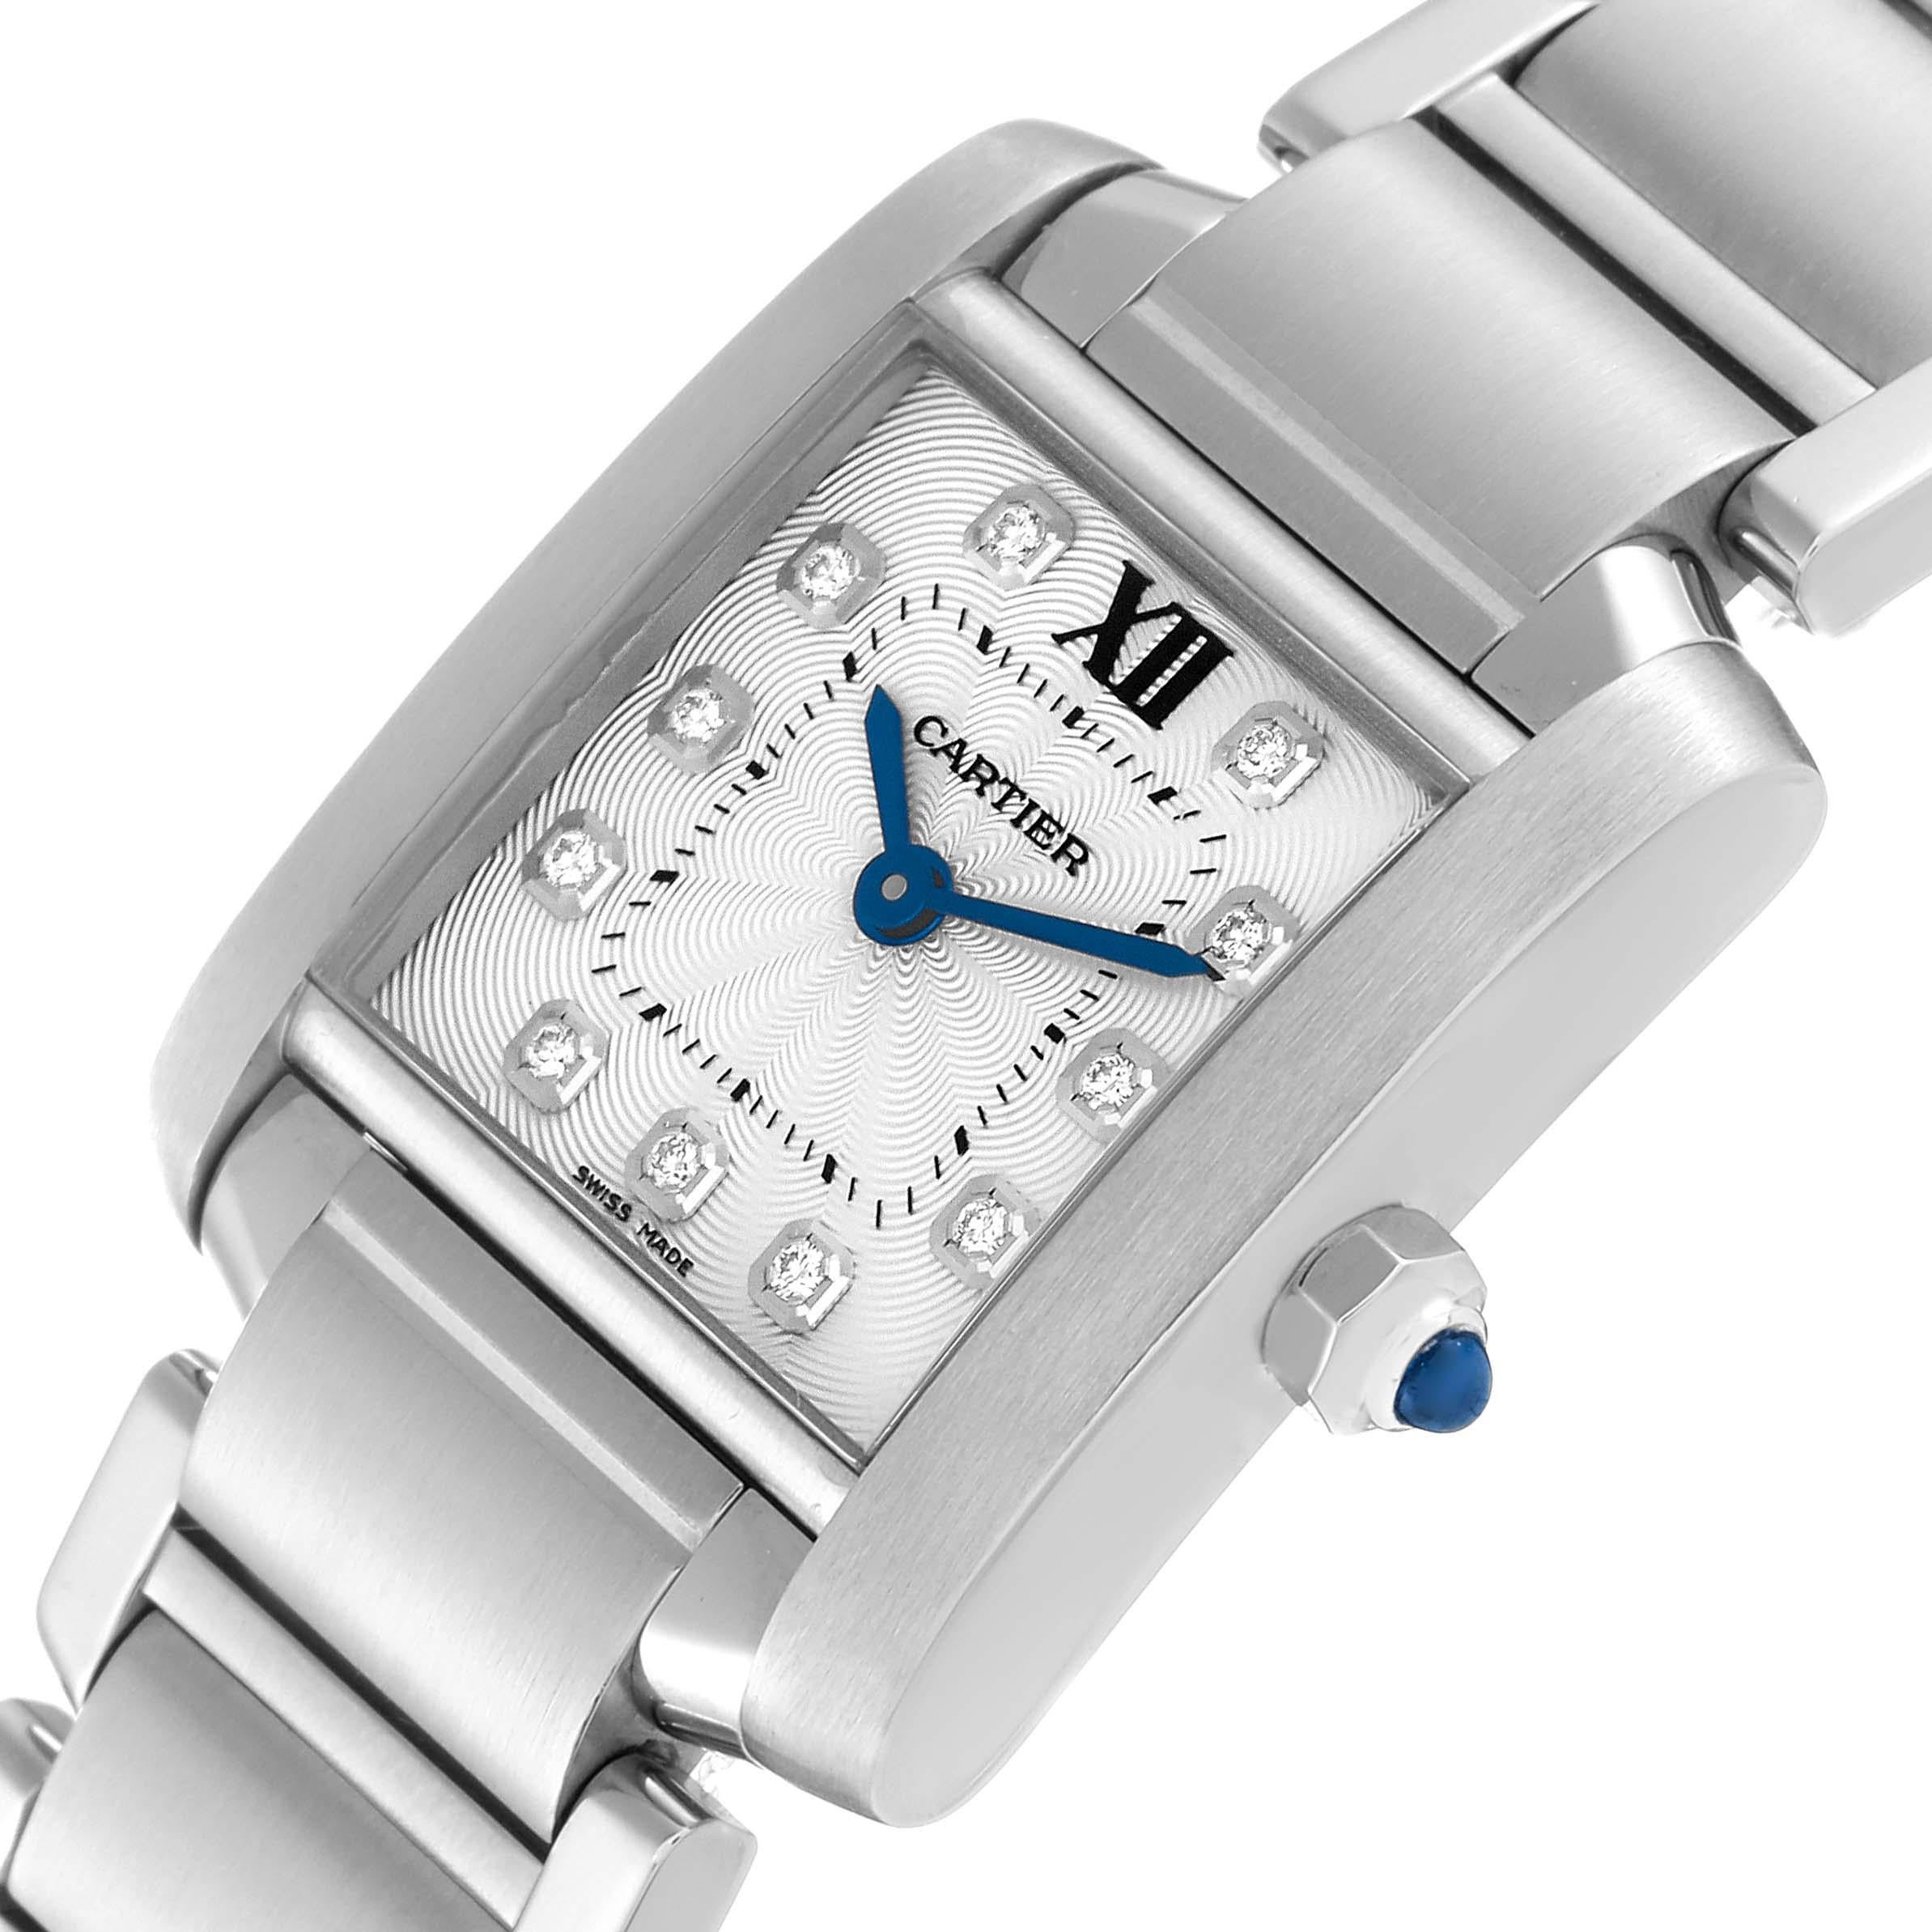 Cartier Tank Francaise Small Steel Diamond Dial Ladies Watch WE110006. Mouvement à quartz. Boîtier rectangulaire en acier inoxydable de 20 x 25 mm. Couronne octogonale sertie d'un cabochon de spinelle bleu . Verre saphir résistant aux rayures.